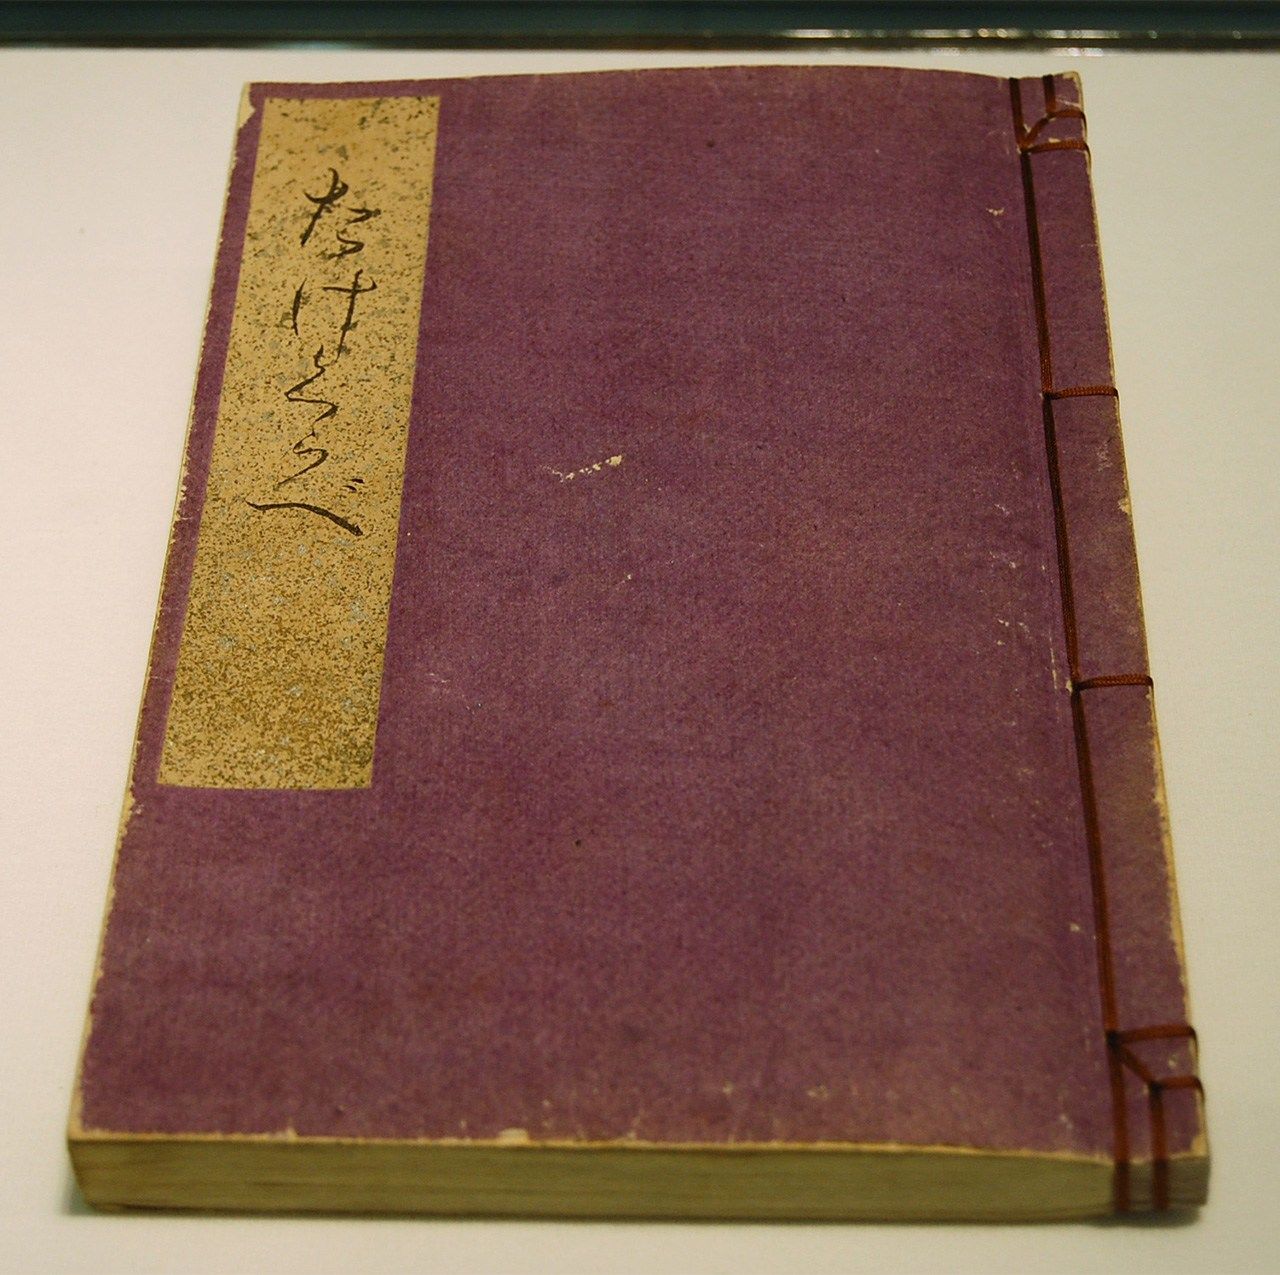 Ichiyo's handwritten manuscript 